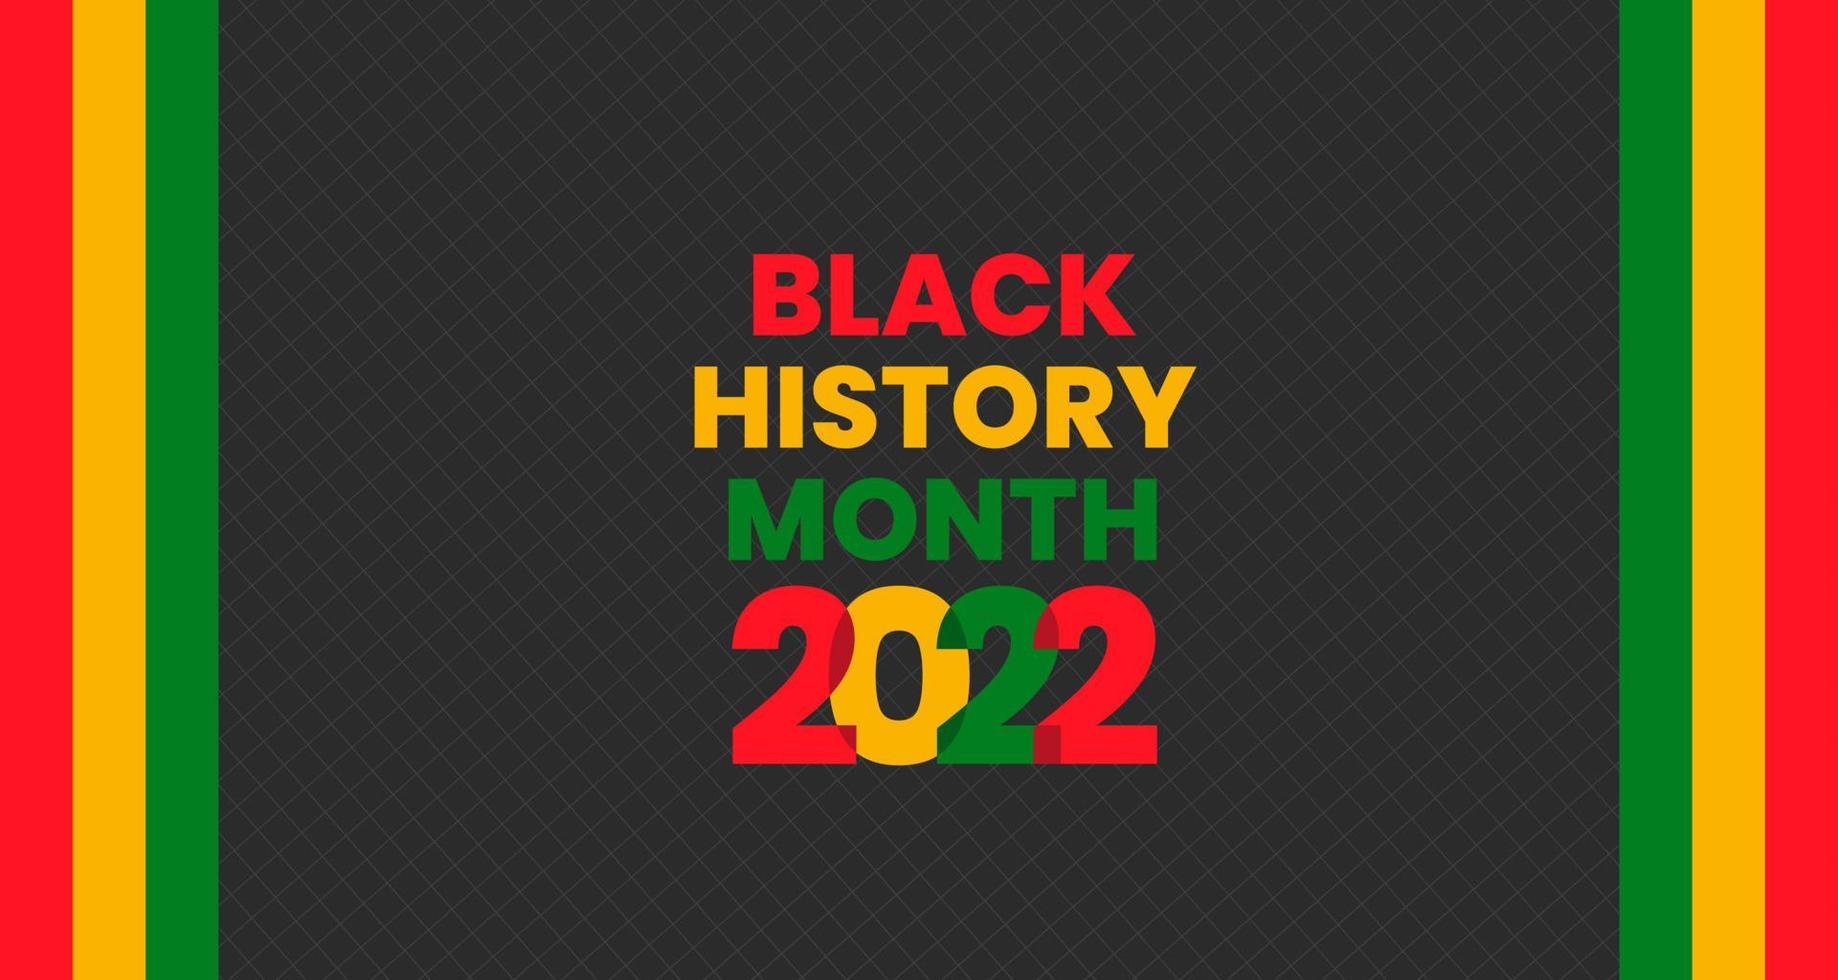 Hintergrund des schwarzen Geschichtsmonats. Afroamerikanische Geschichte oder schwarzer Geschichtsmonat. wird jährlich im februar in den usa und kanada gefeiert. Monat der schwarzen Geschichte 2022 vektor